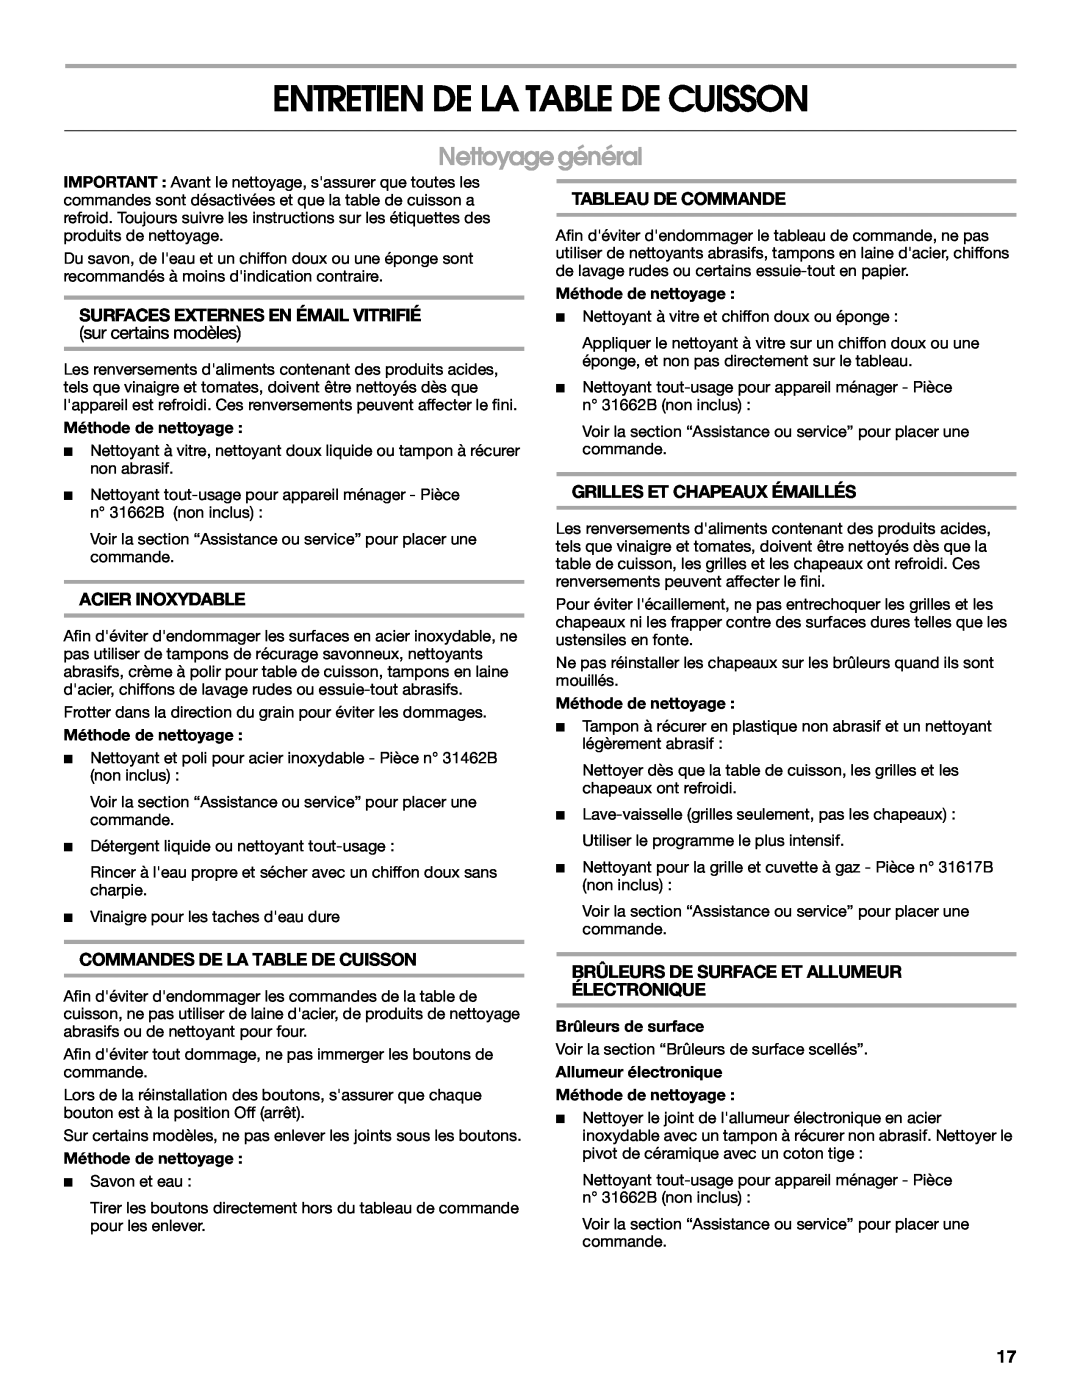 Maytag MGC8636WS, W10251095A manual Entretien De La Table De Cuisson, Nettoyage général, Surfaces Externes En Émail Vitrifié 